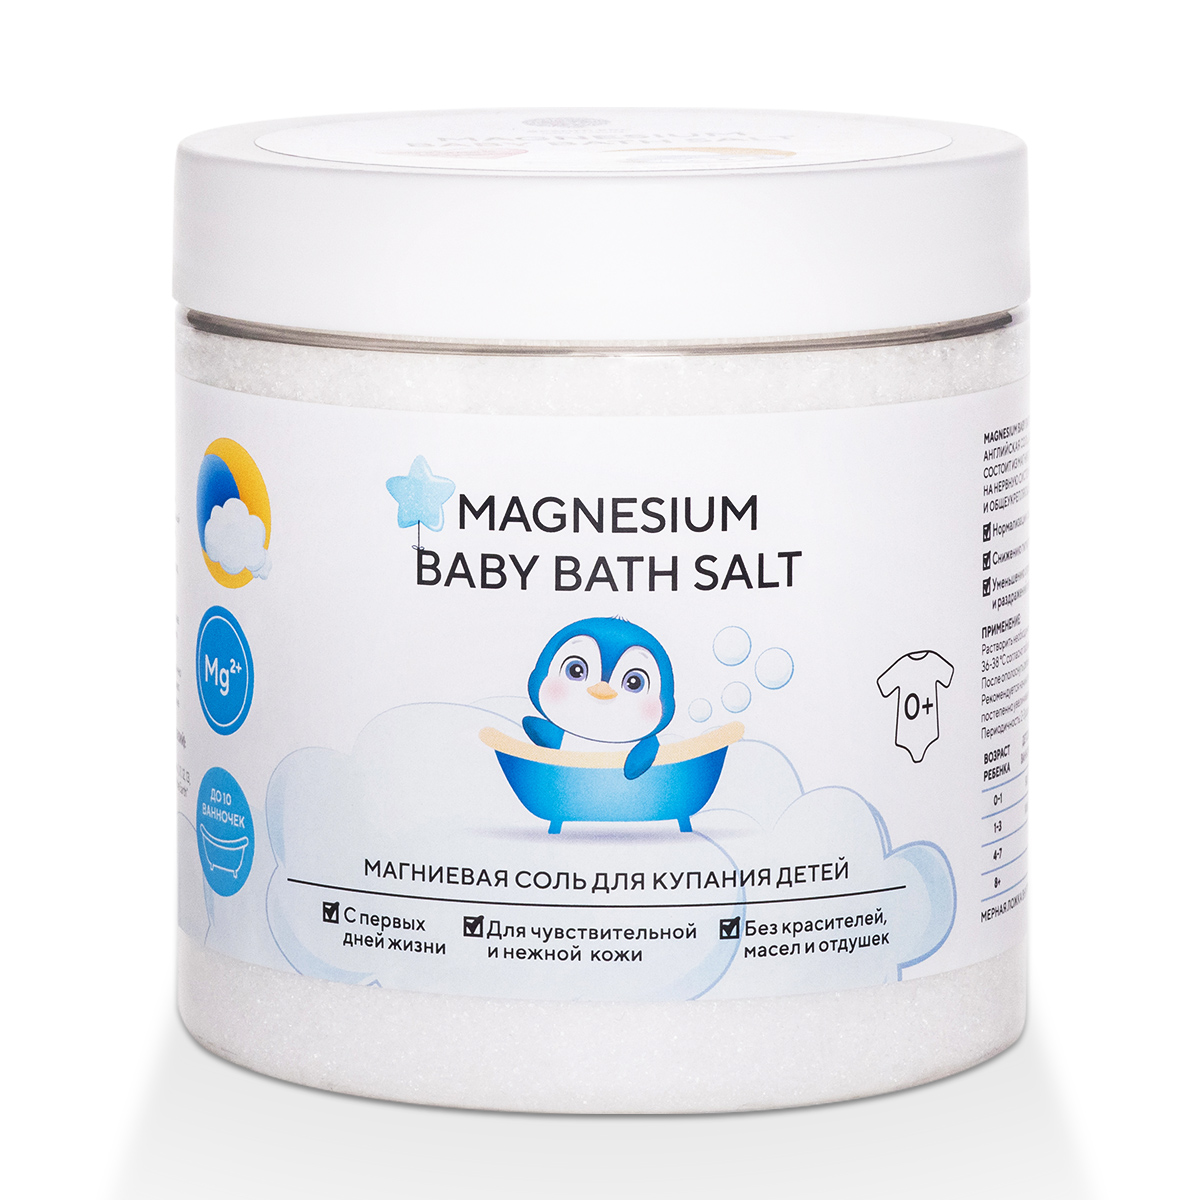 Соль магниевая Magnesium Baby Bath Salt для купания детей 500 г